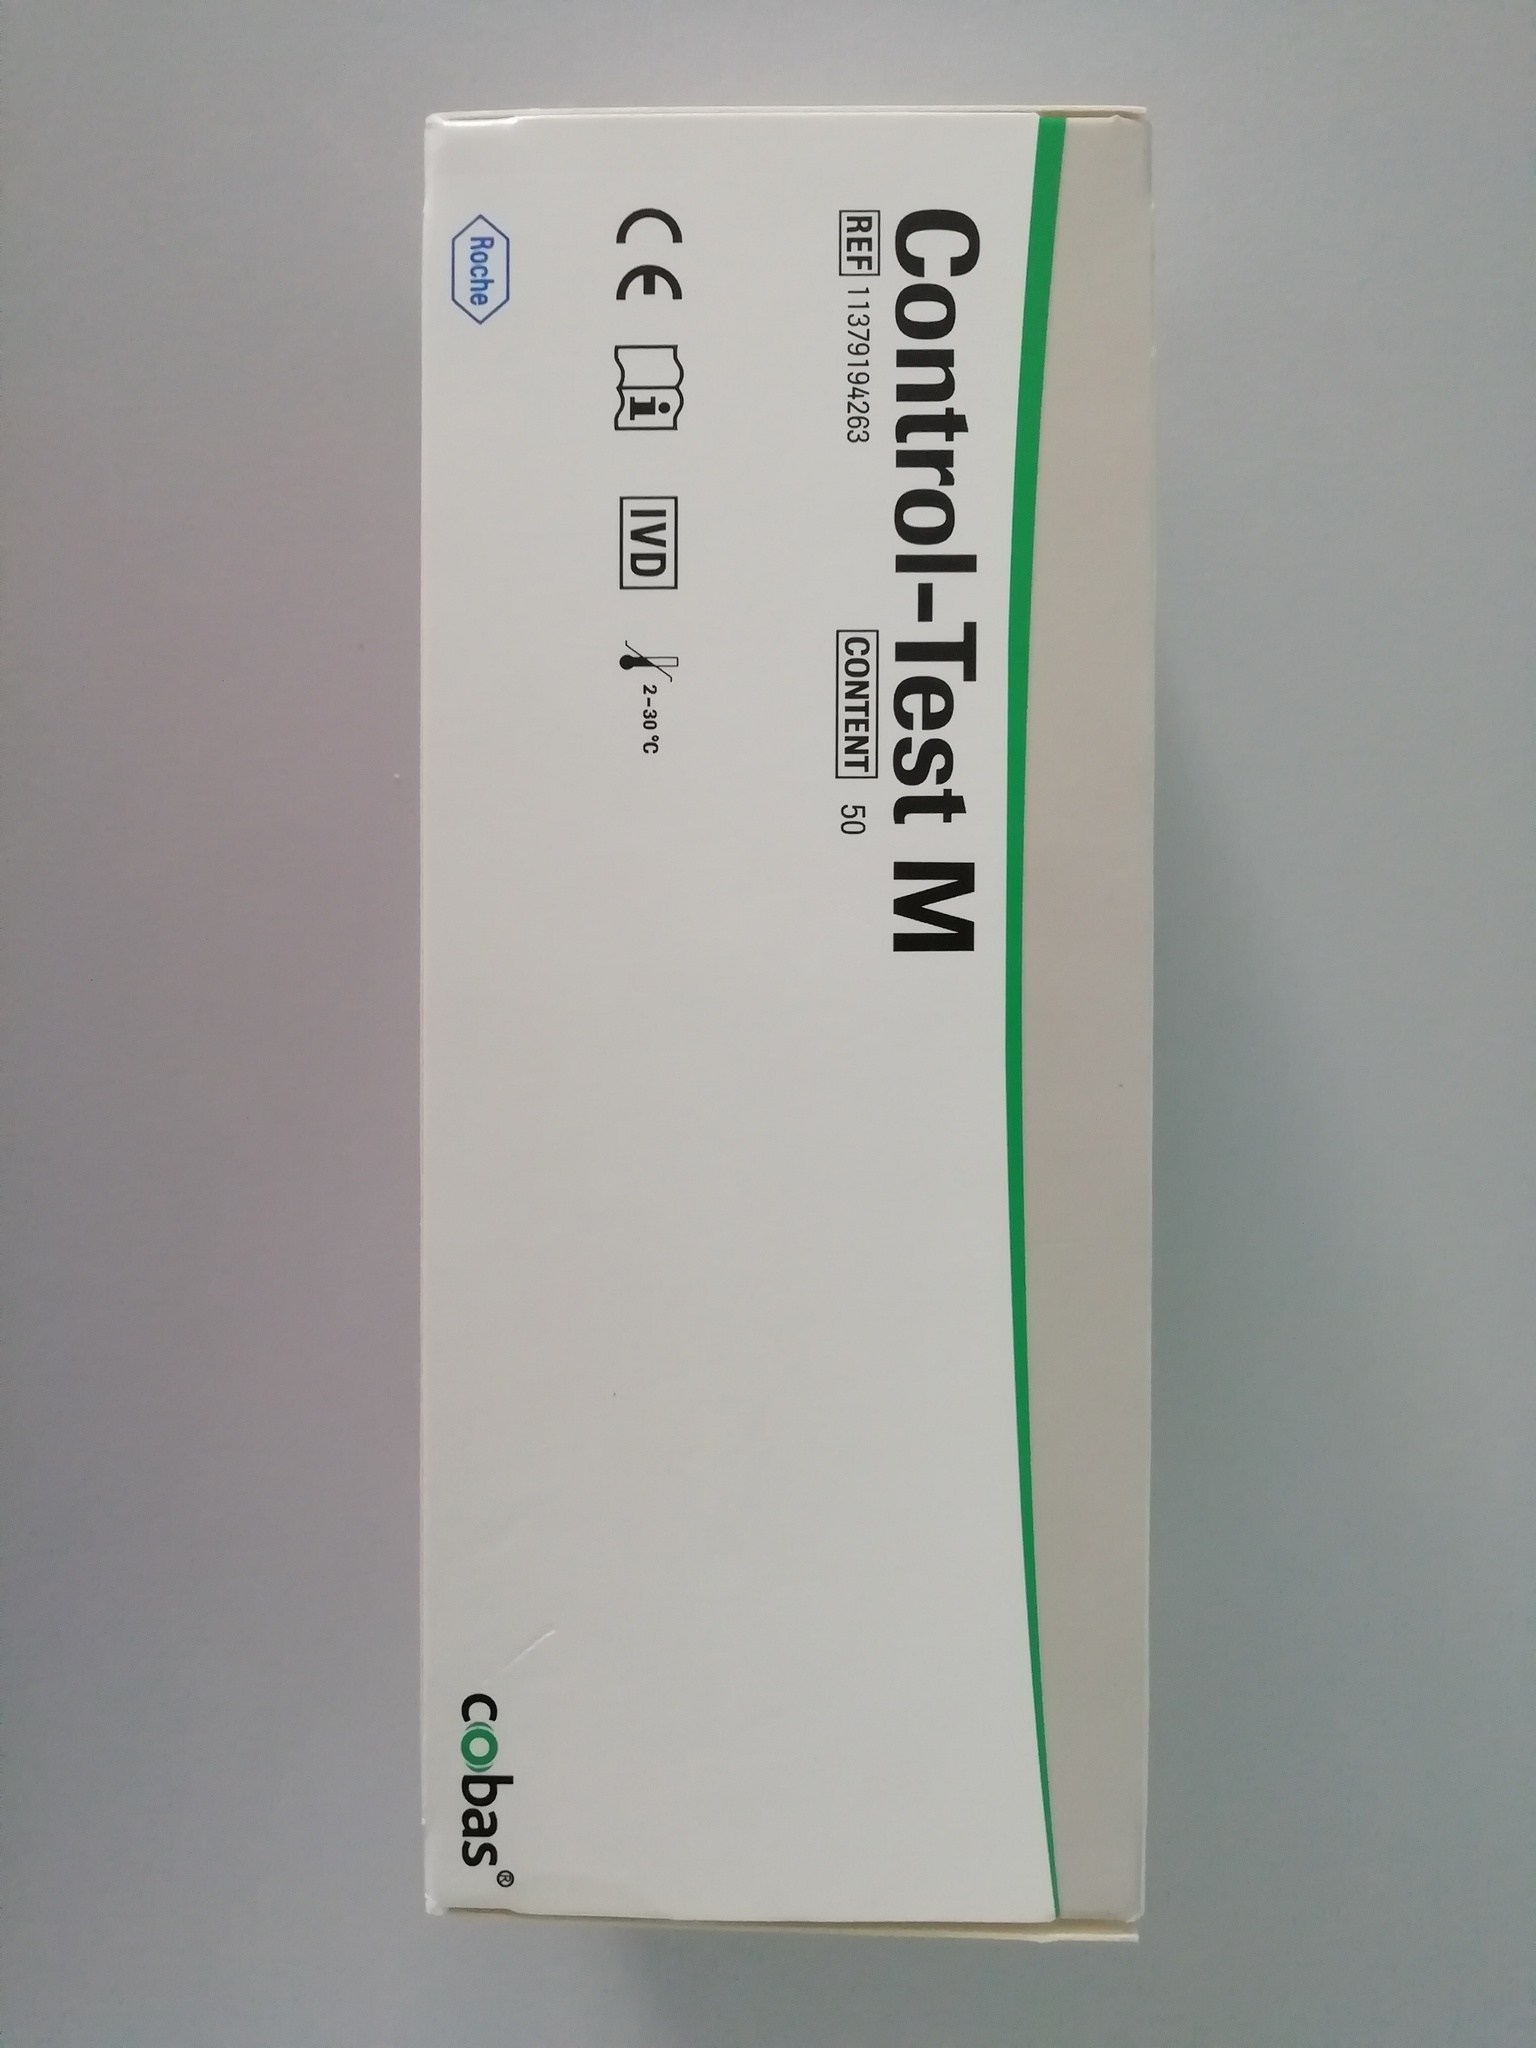 Купить тест м. Термобумага для мочевого анализатора Urisys 1100. Тест полоски для анализатора урисйс11544373049 Германия. Combur 12 Test.